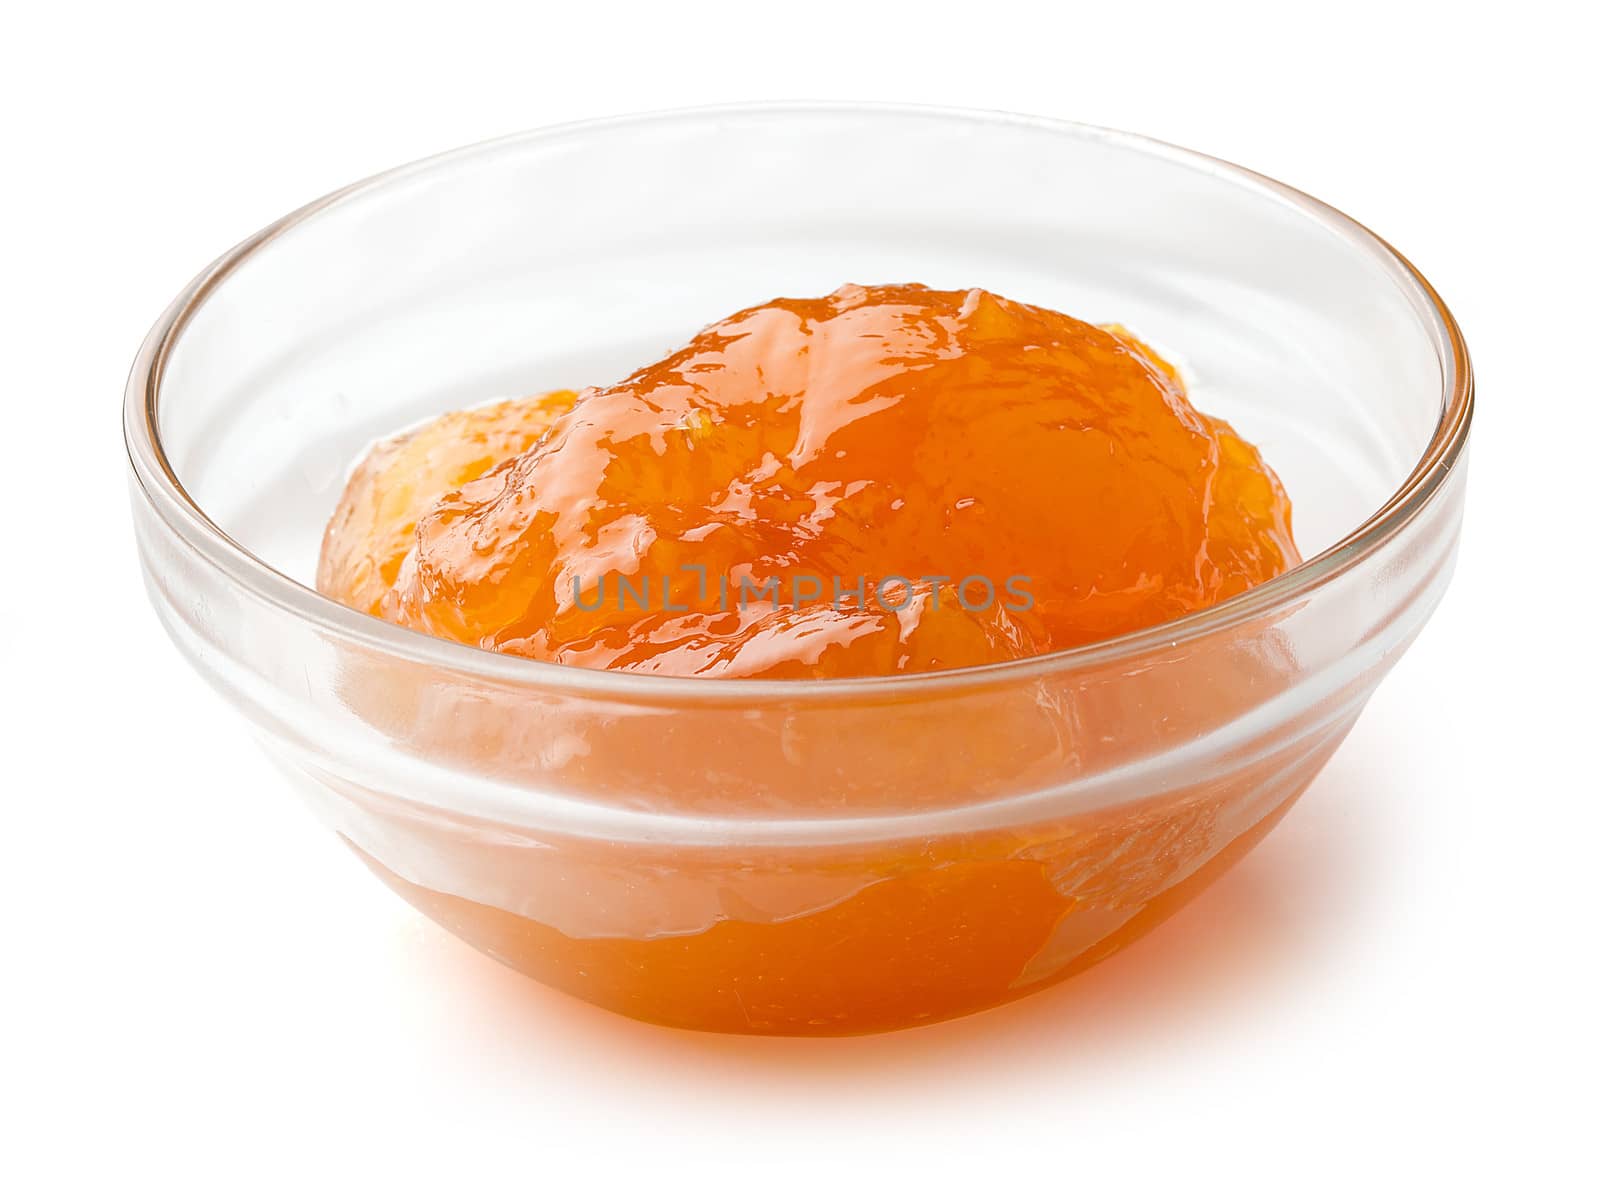 Apricot's jam by Angorius